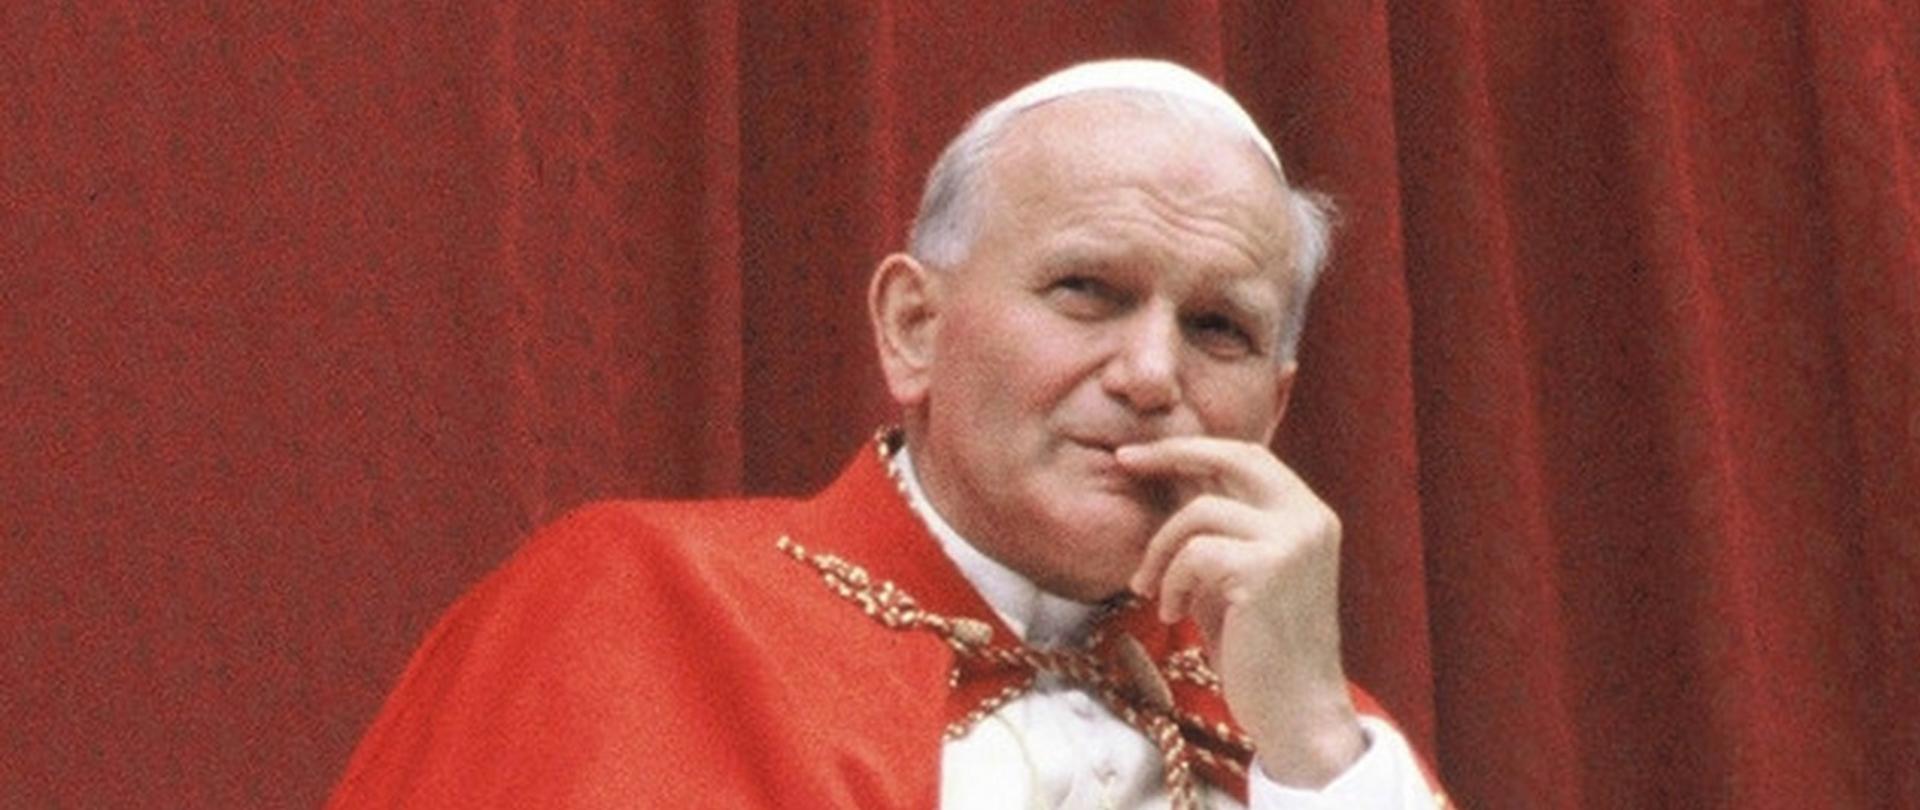 Papież Jak Paweł II w białej sutannie z czerwoną mozzetą (pelerynką) na ramionach, zamyślony, z dłonią uniesioną do twarzy, spogląda w dal; za nim bordowa pofalowana tkanina